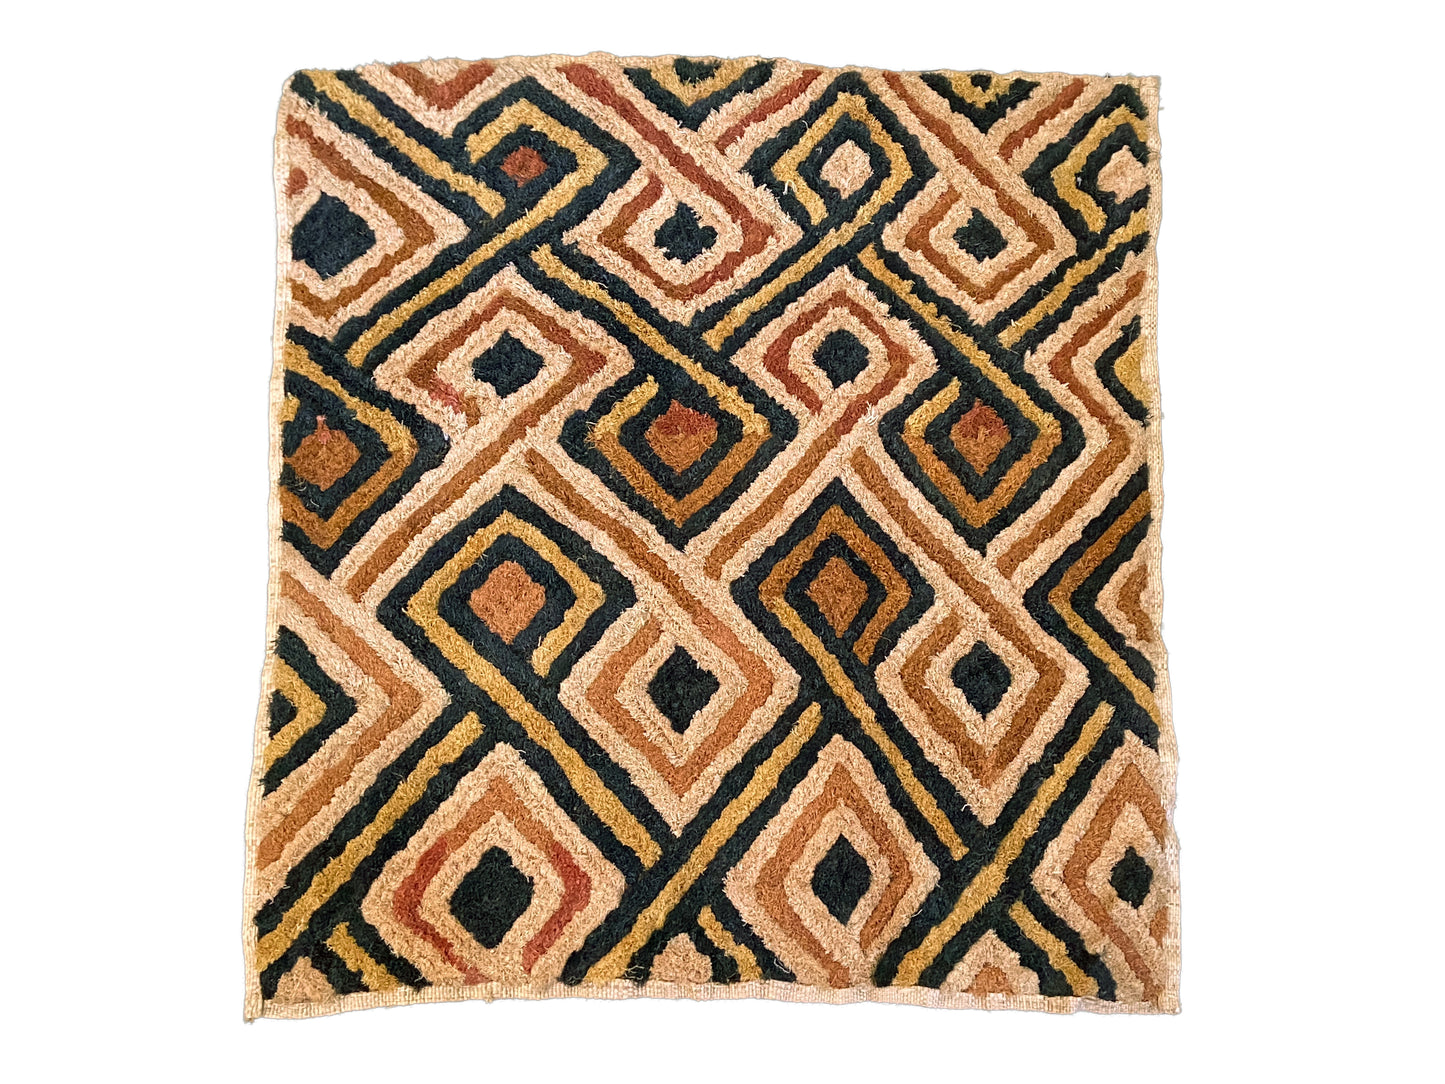 #2040 Superb African Kuba Kasai Velvet Raffia Textile Zaire 26 "by 23"